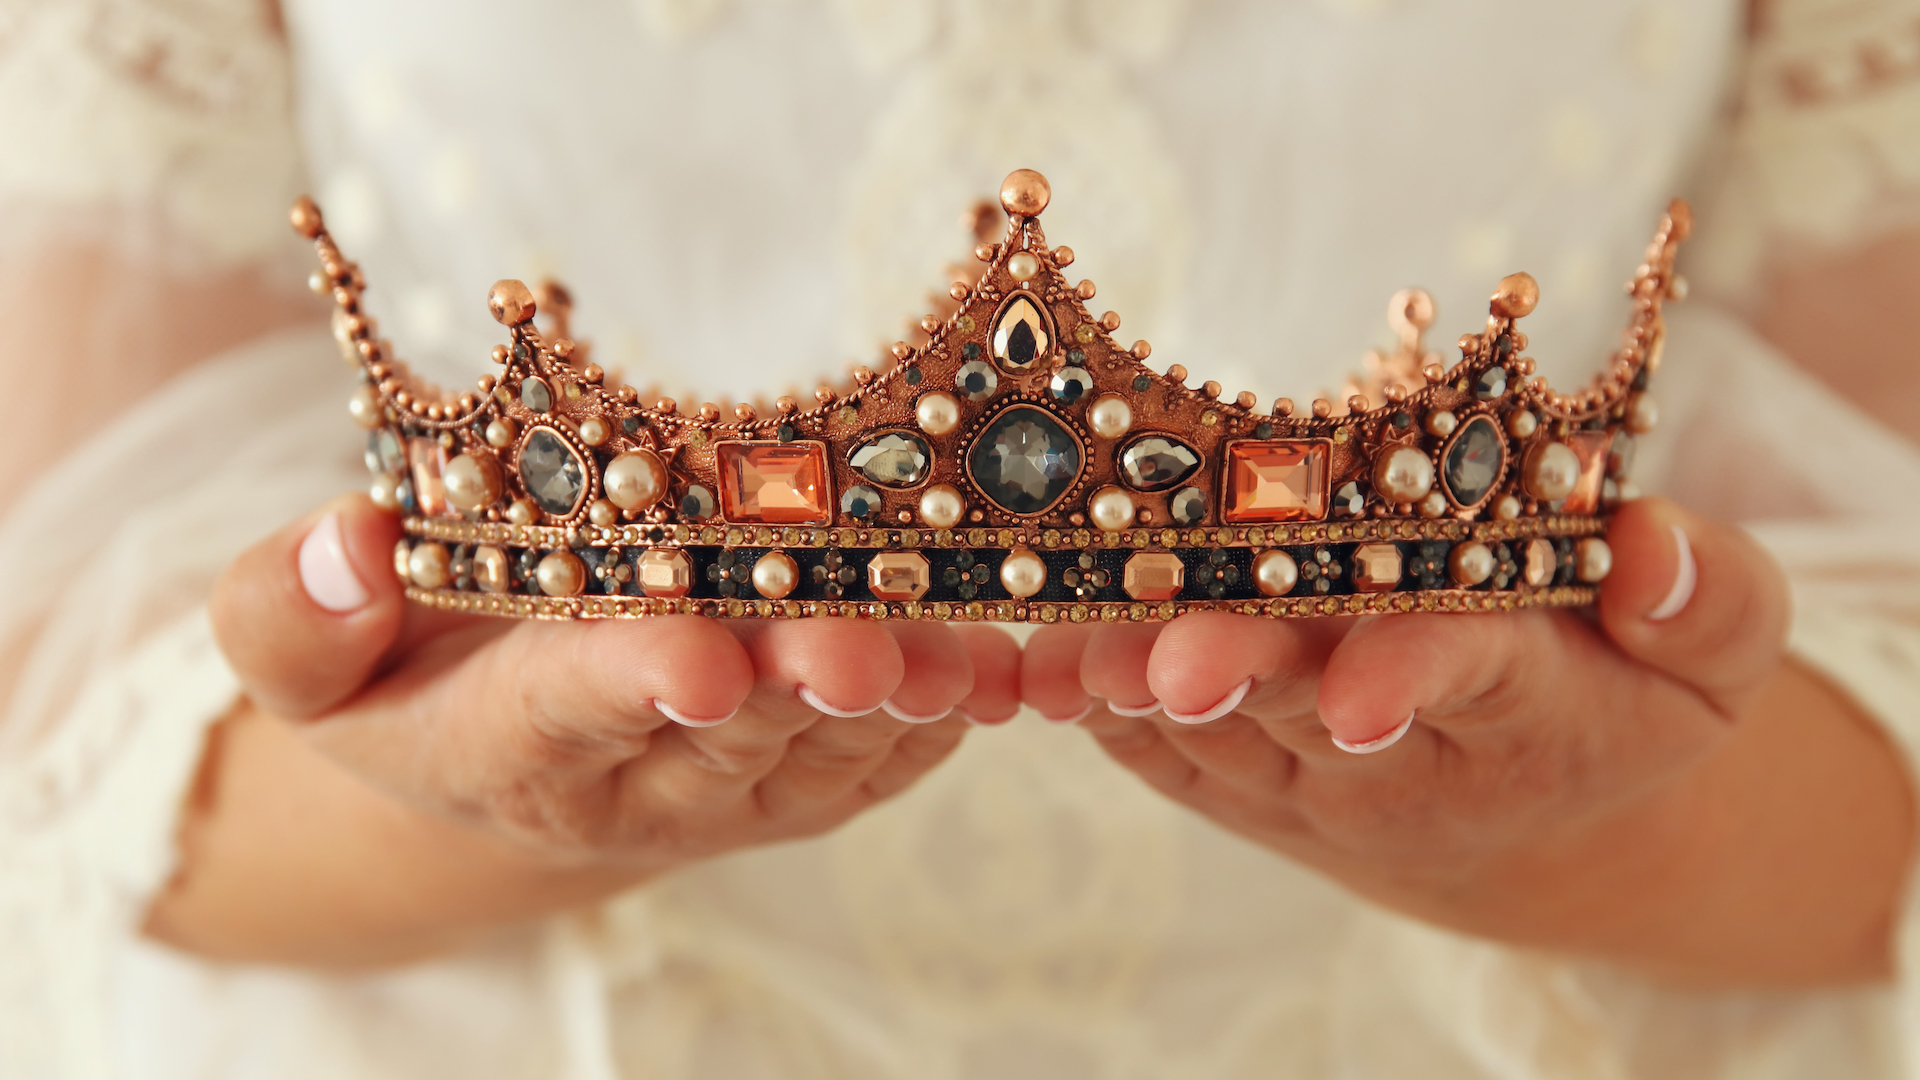 A fancy crown